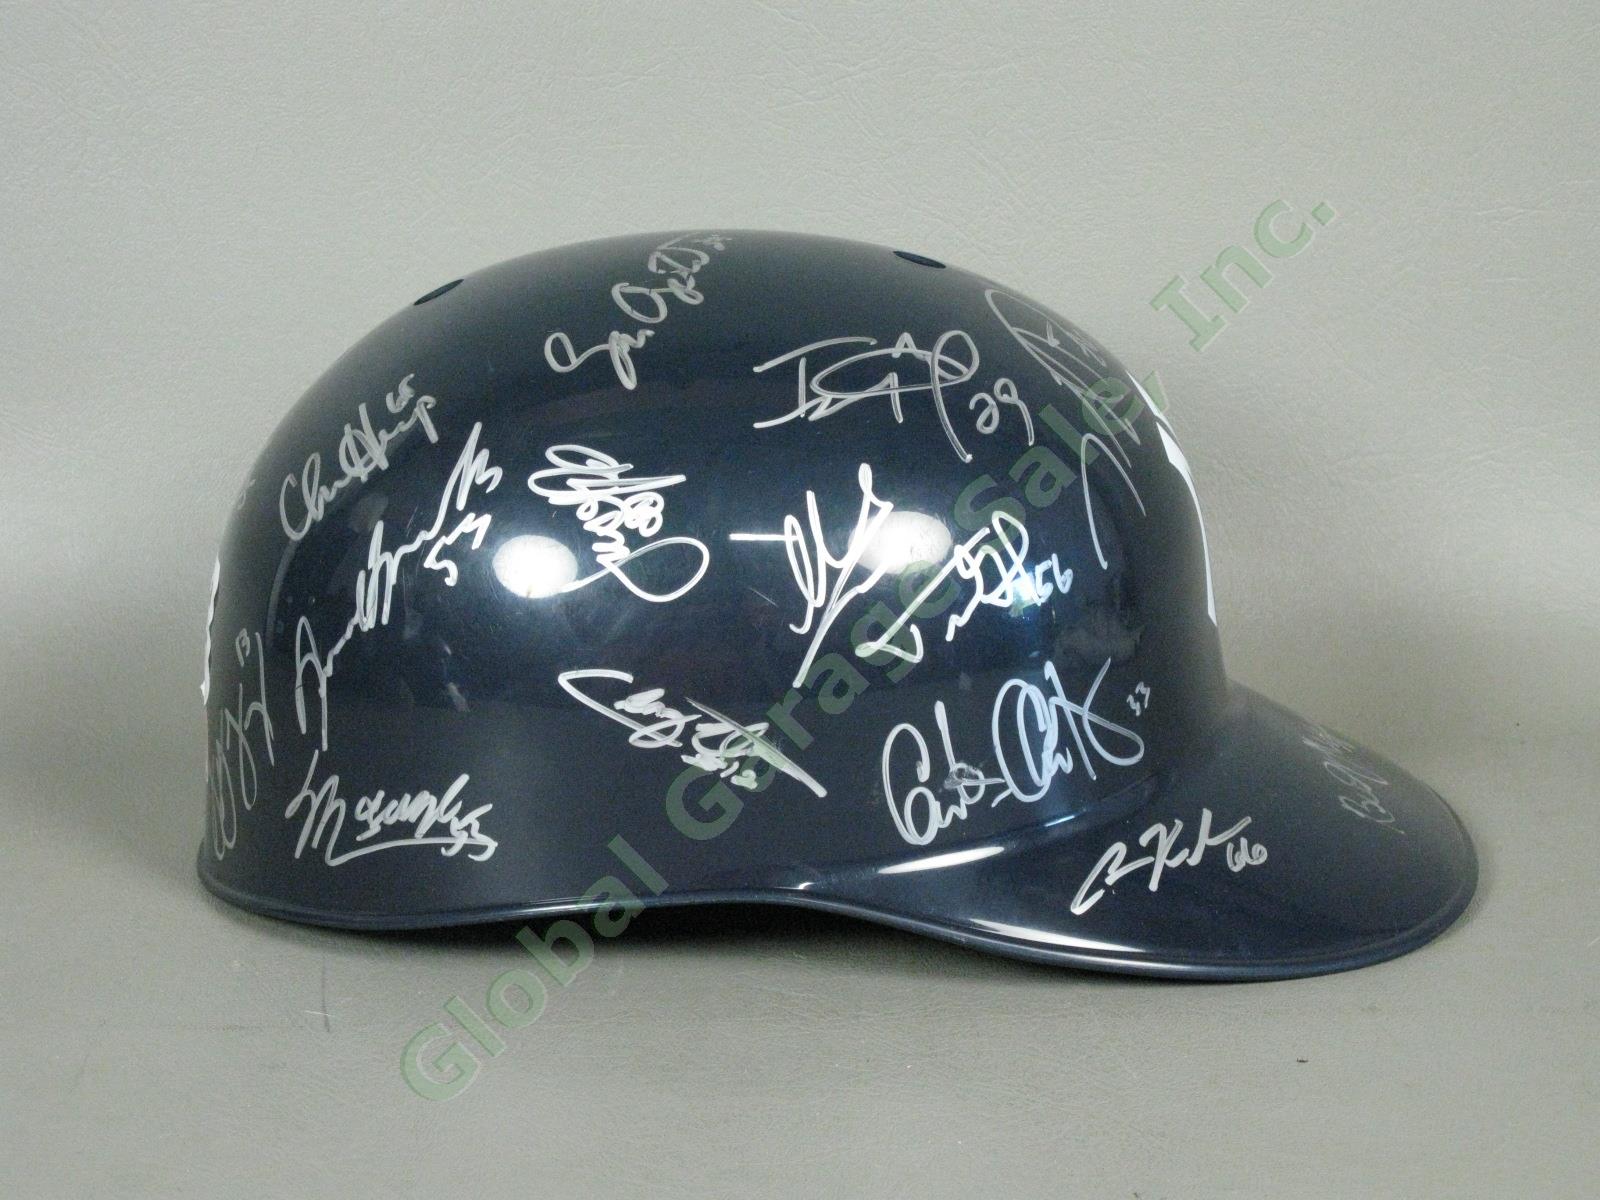 2013 Staten Island Yankees Team Signed Baseball Helmet MiLB MLB NYPL New York NR 1